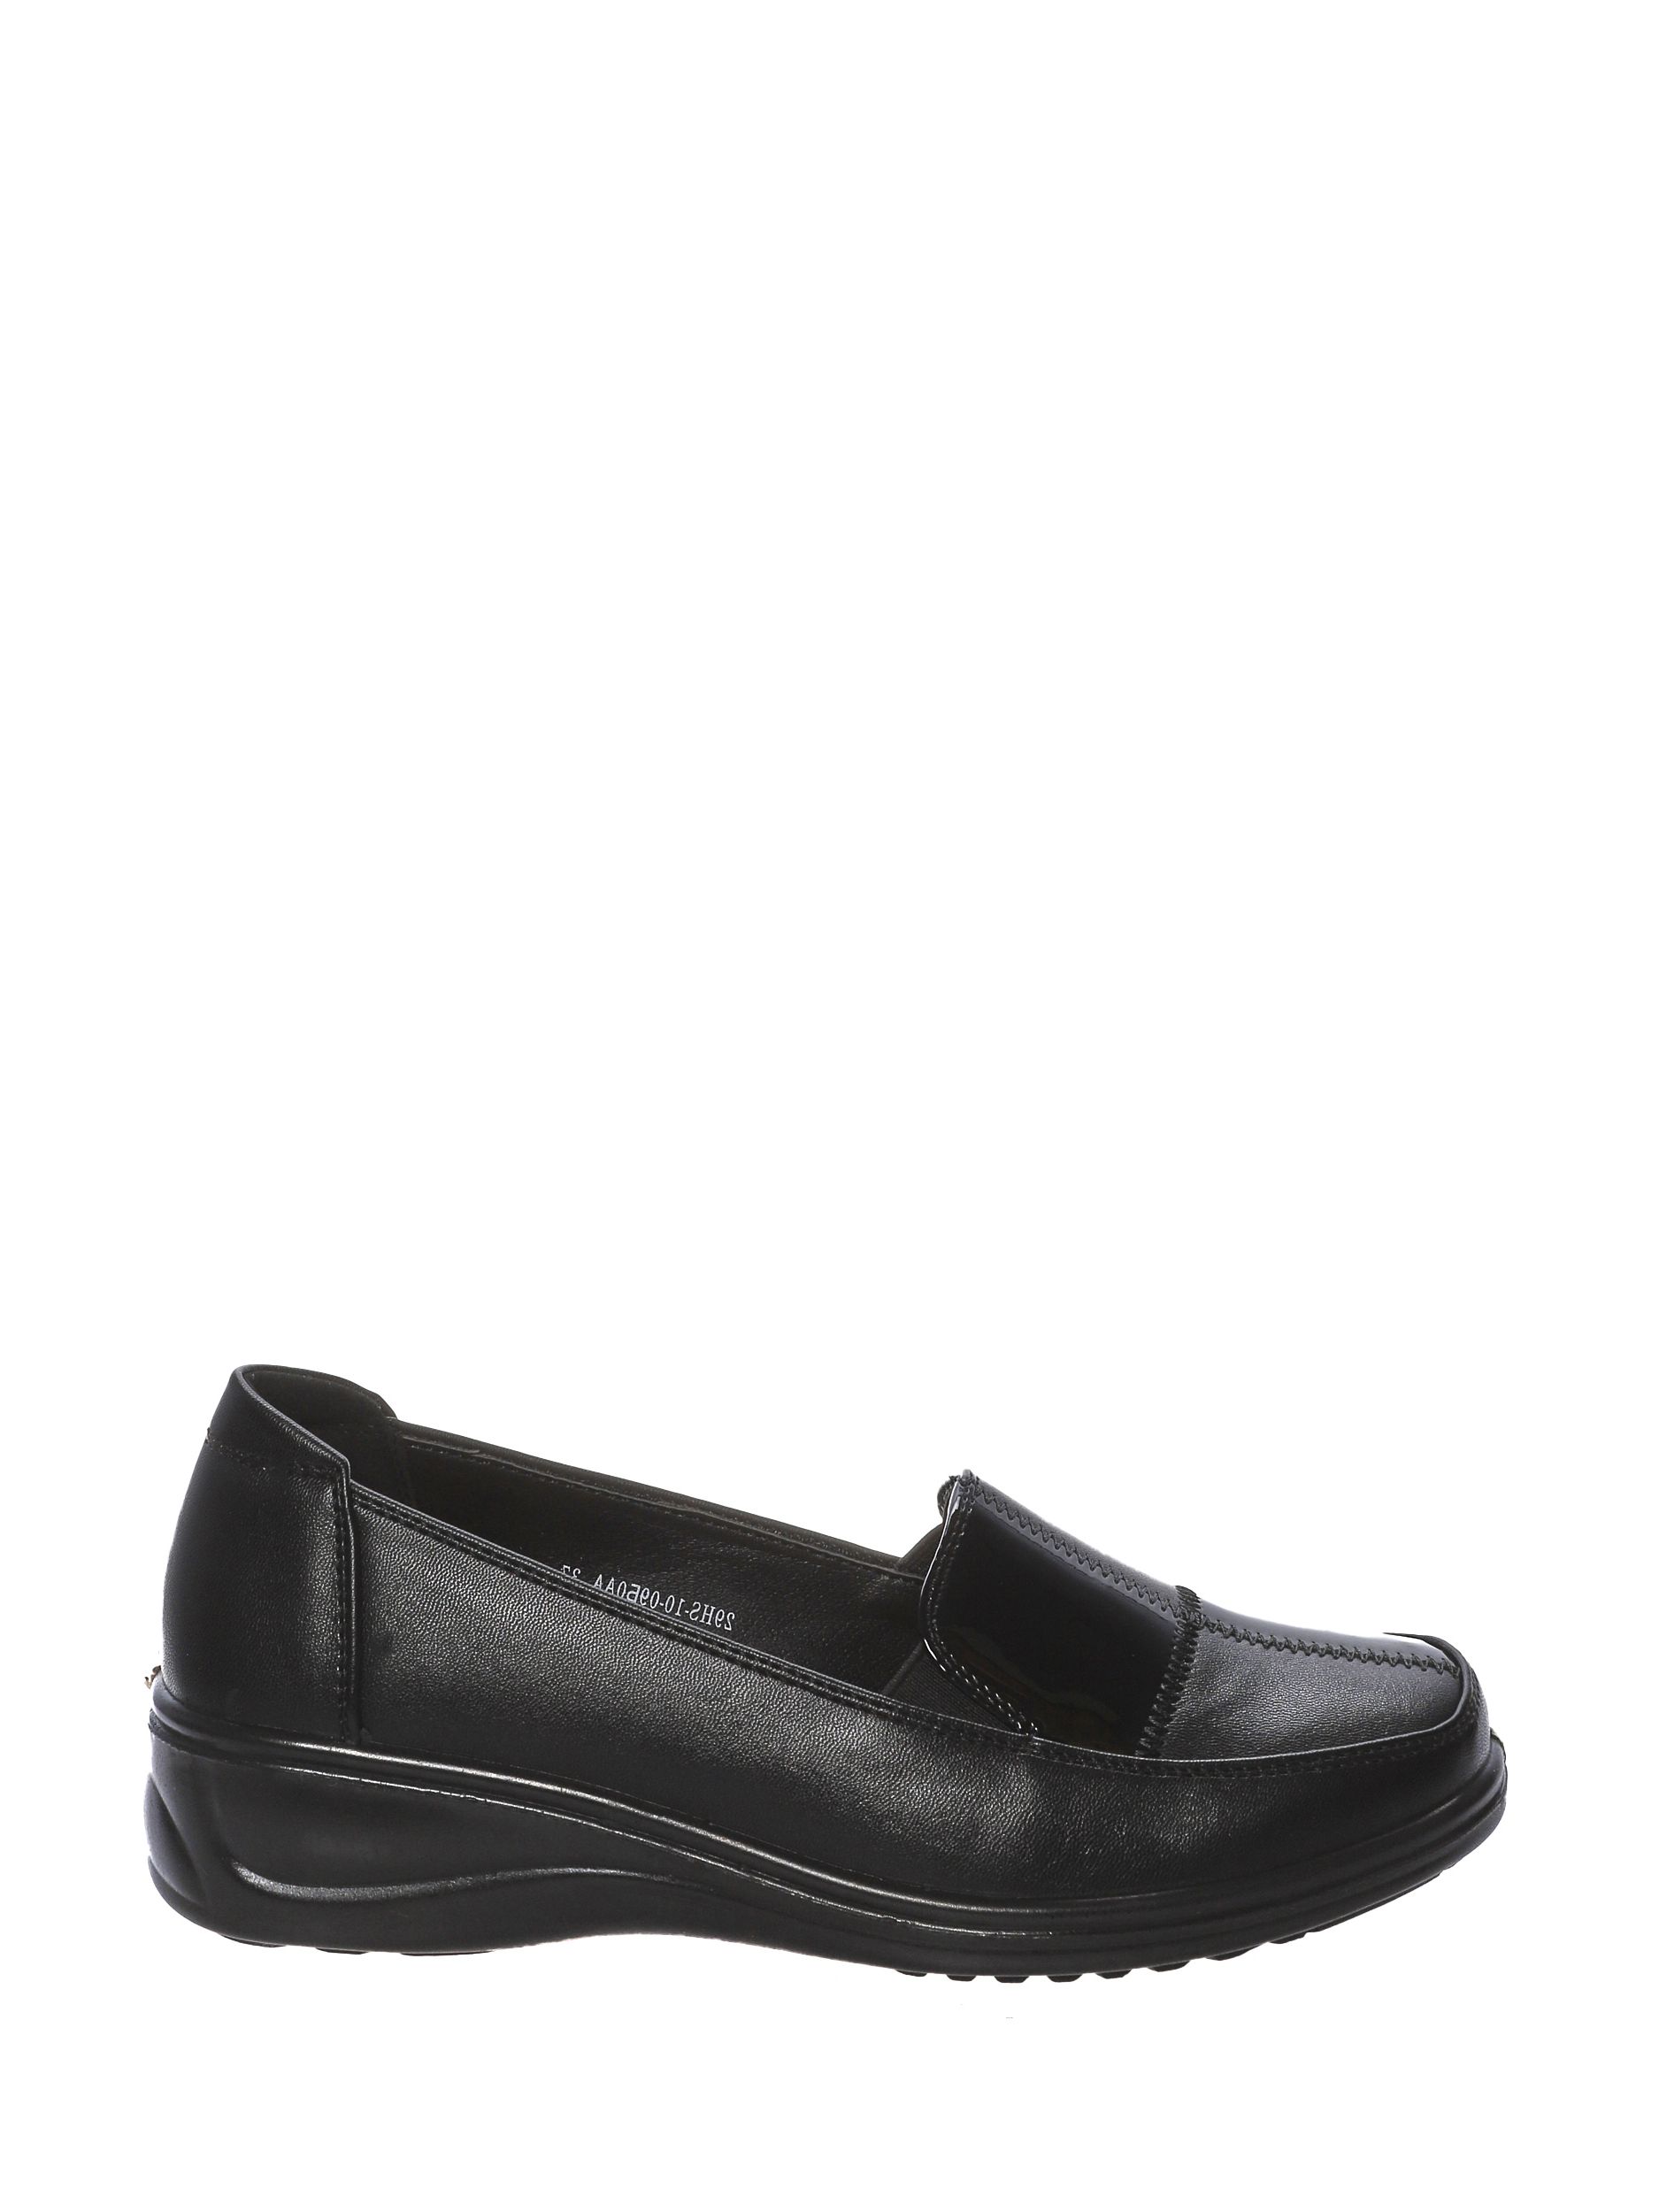 Туфли женские 4x4 shoes 29HS-10-09Б0 черные 39 RU